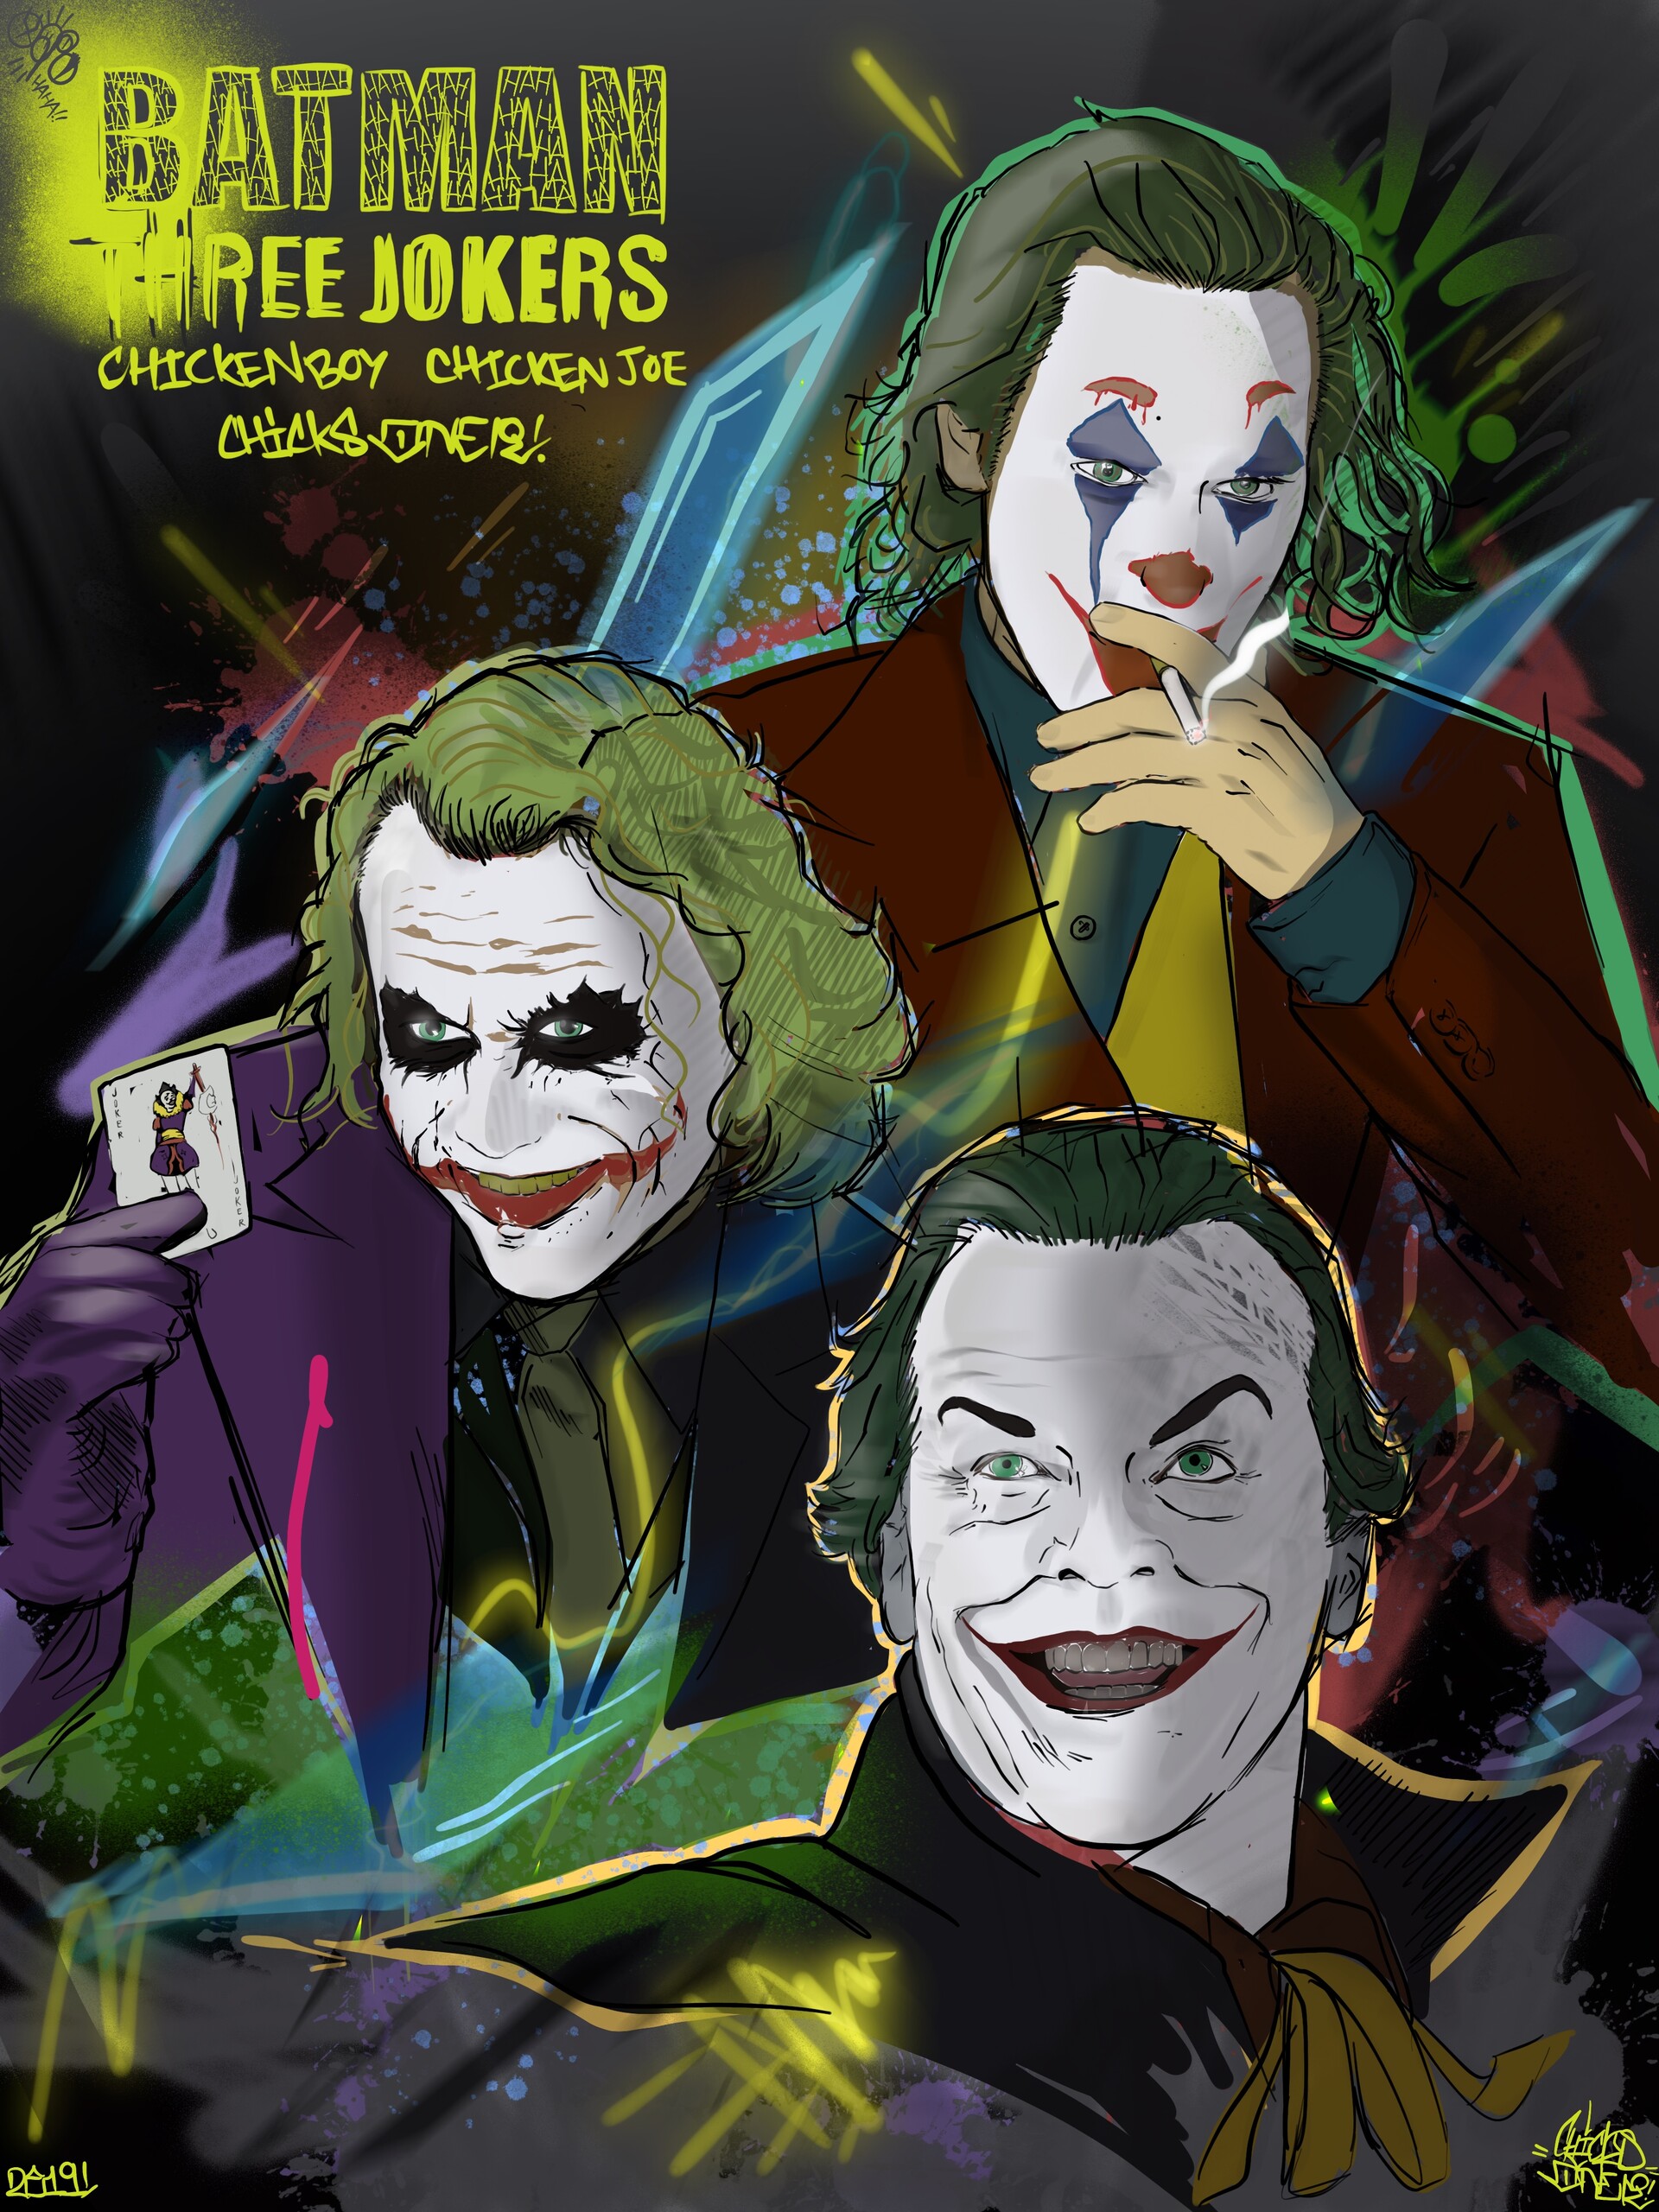 ArtStation - The Three Jokers